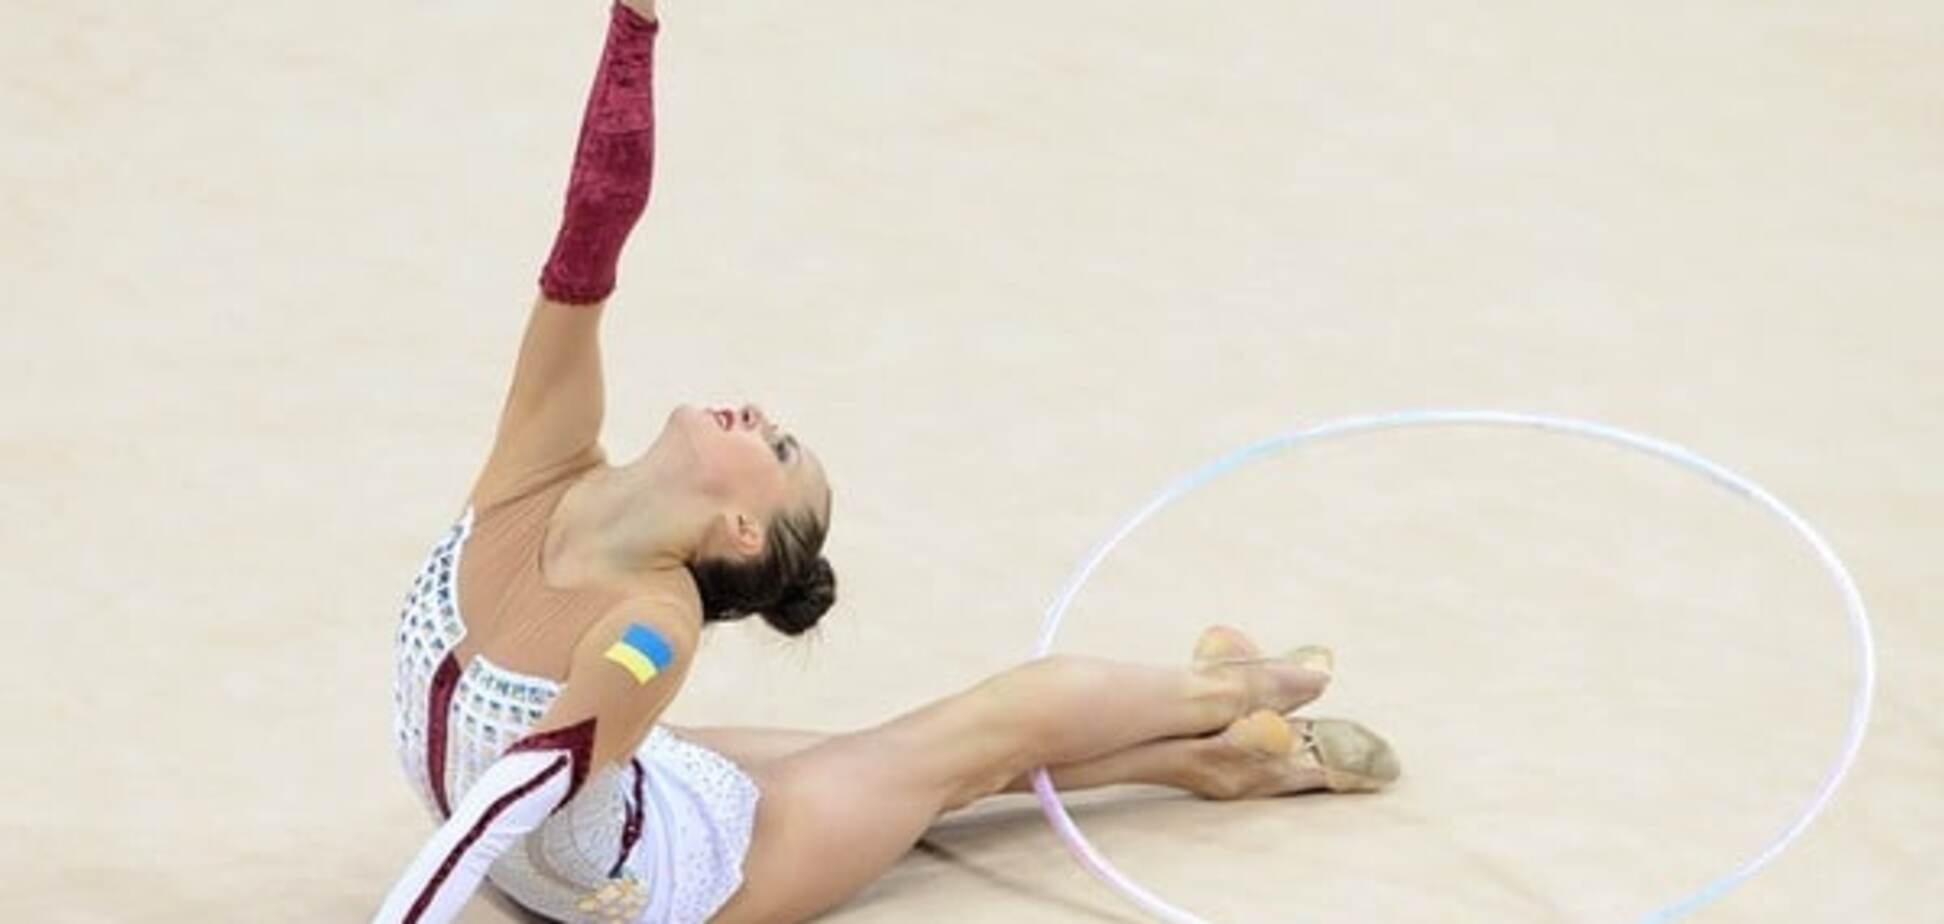 'Медалі улюбленій країні': кримська гімнастка в захваті, що принесла Україні перемогу на Кубку світу